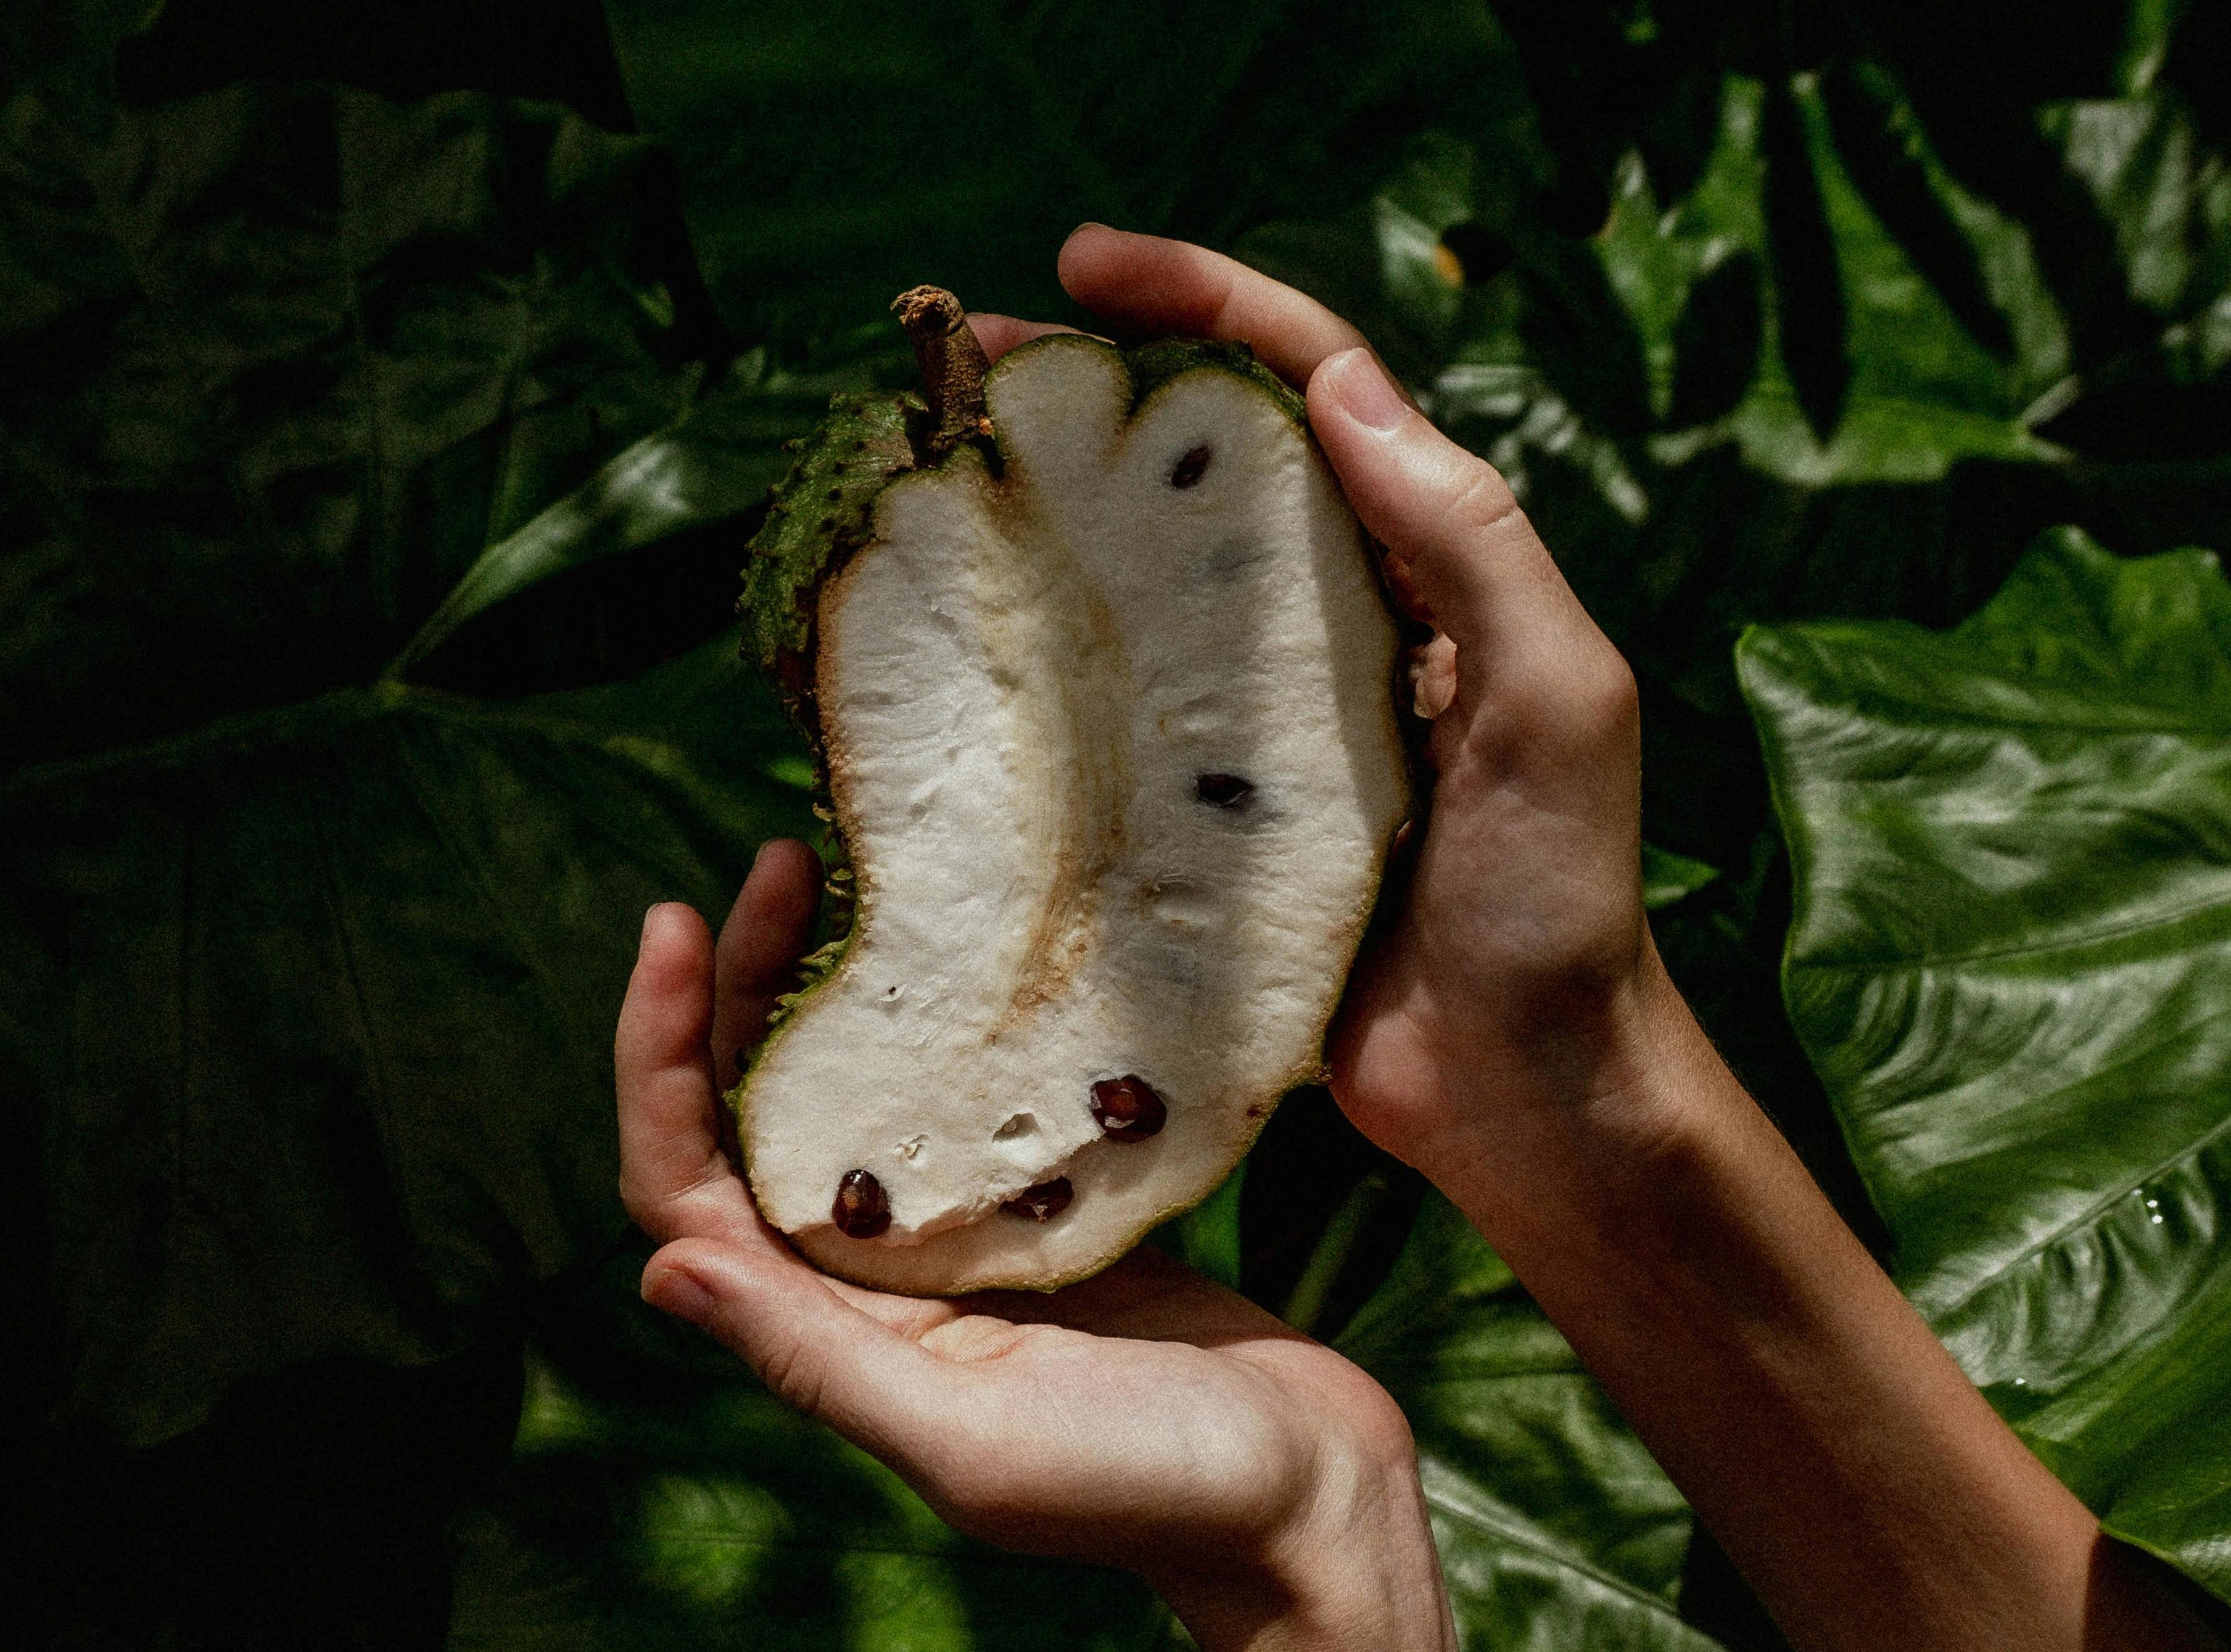 Biela dužina vo vnútri ovocia obsahuje množstvo antioxidantov. FOTO: Pexels.com